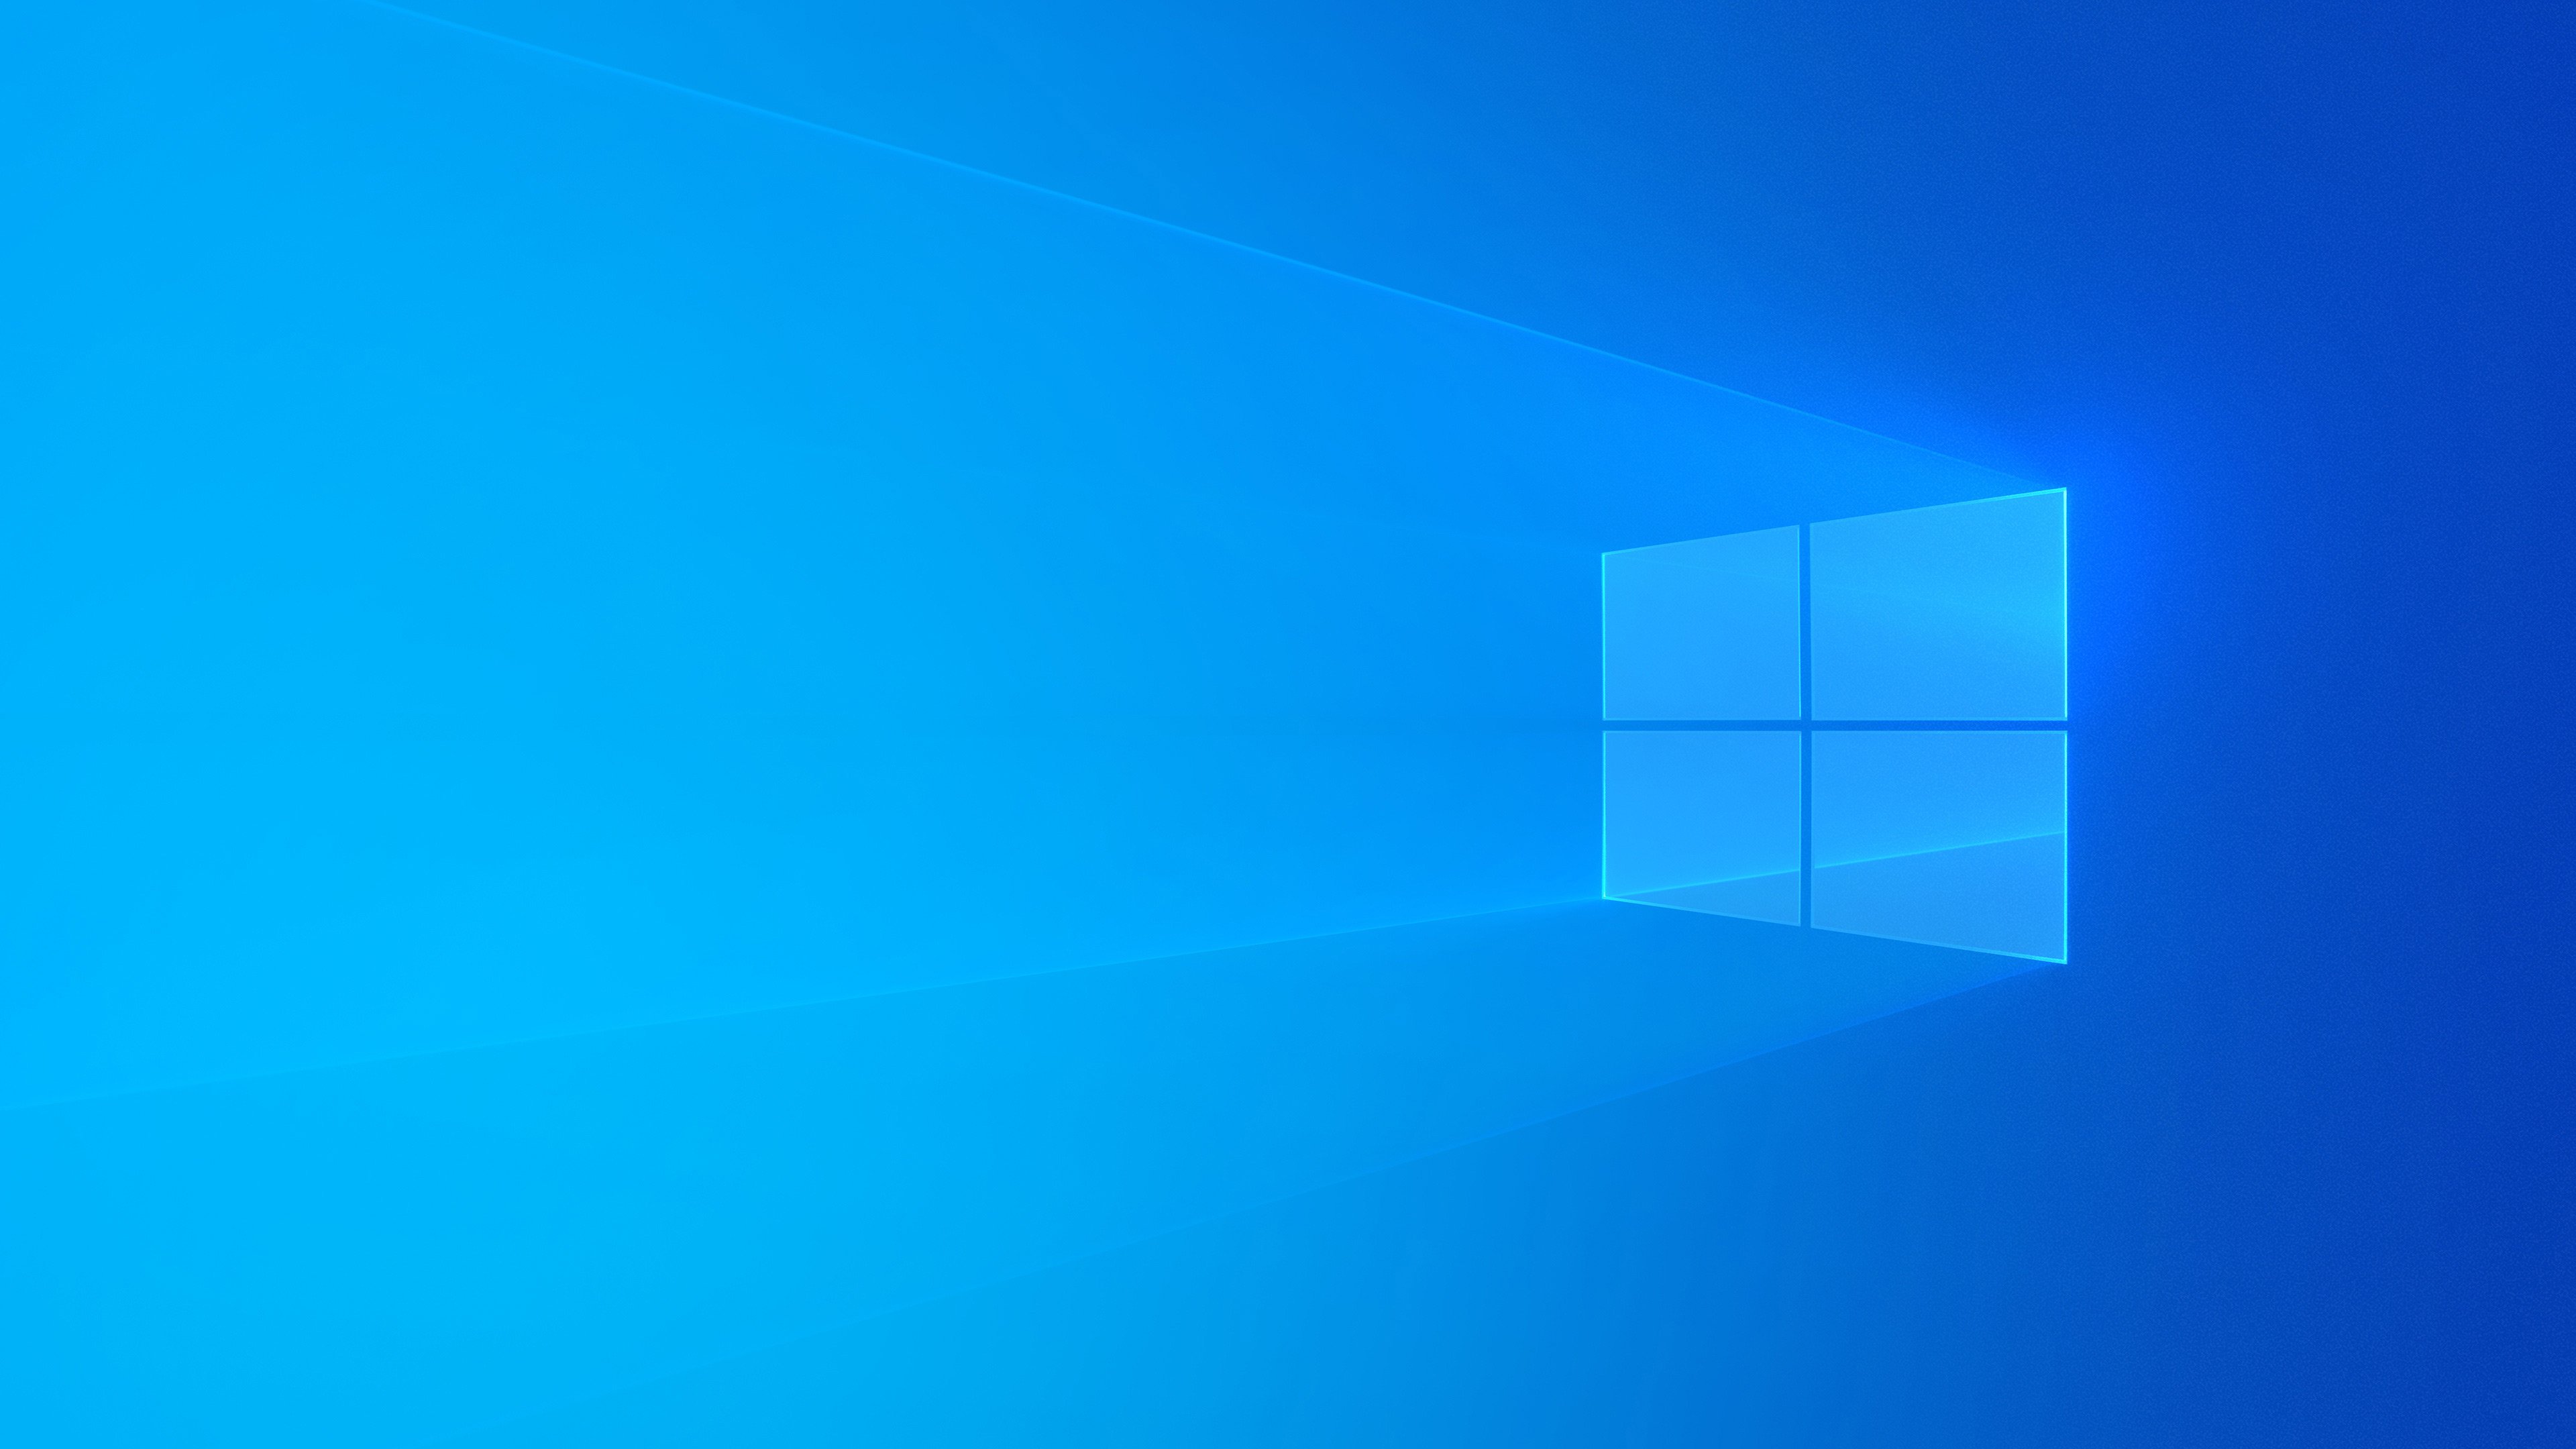 Bạn muốn biết thêm về Windows 10 update? Đón xem hình ảnh liên quan đến từ khóa này, để tìm hiểu về các tính năng mới và cải tiến trong phiên bản này. Chắc chắn bạn sẽ bất ngờ với những cải tiến này của Windows